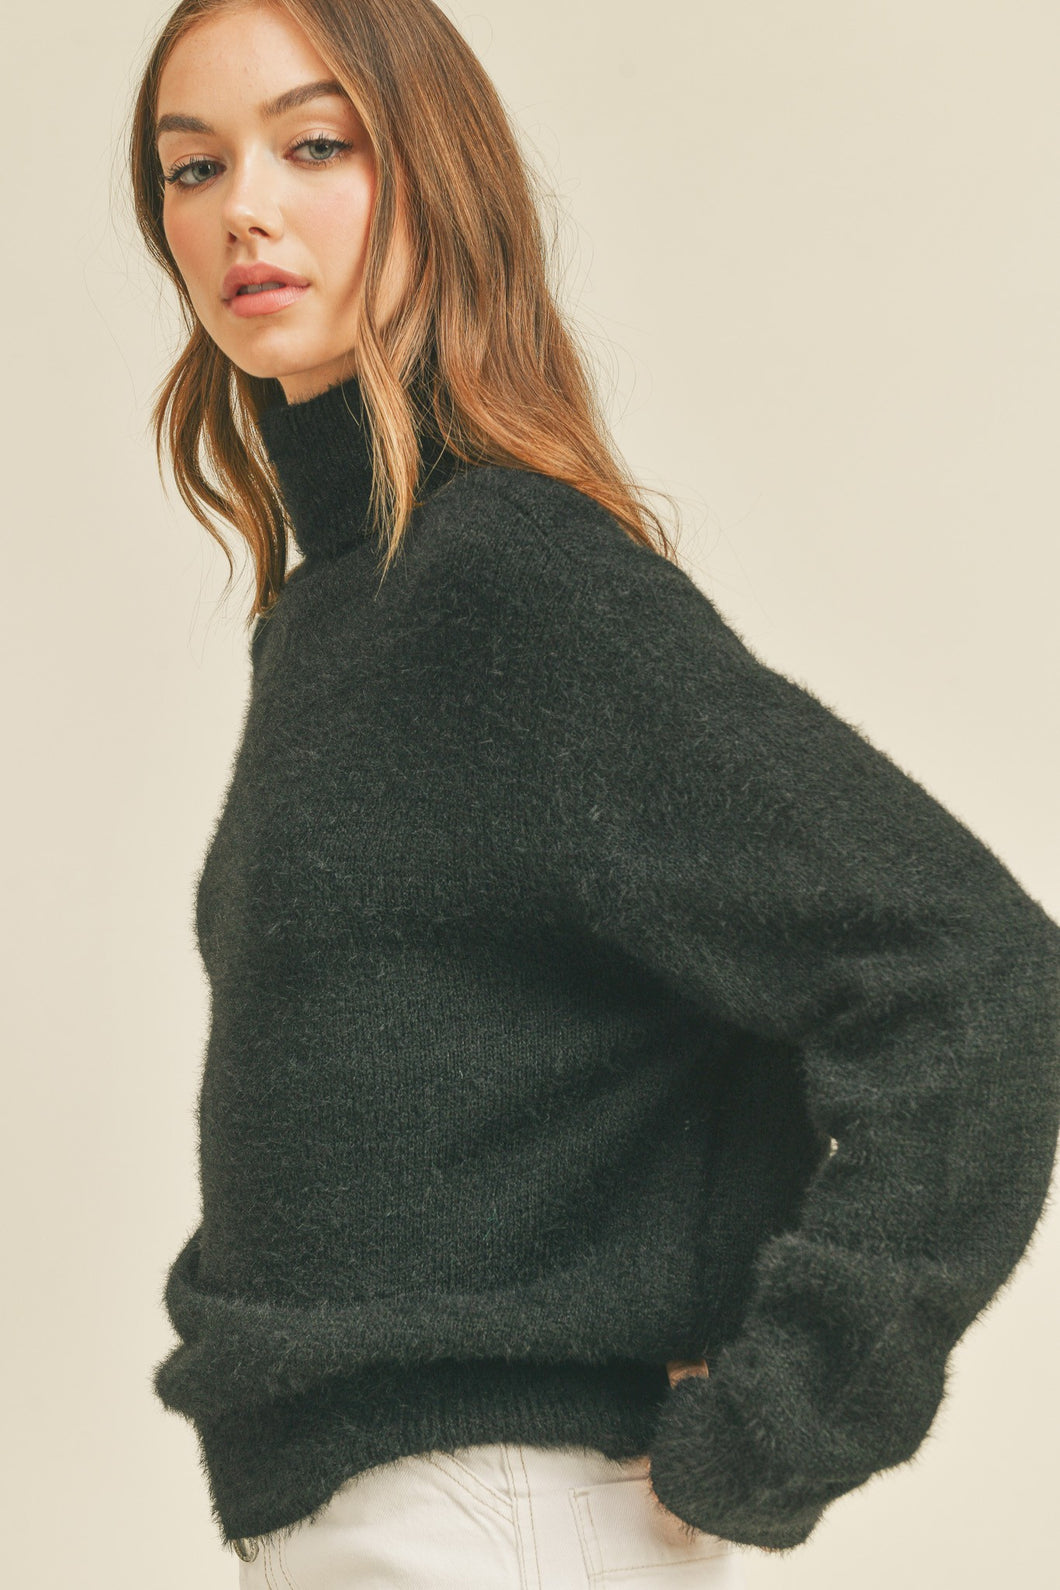 Kristy Long Sleeve Turtleneck Sweater